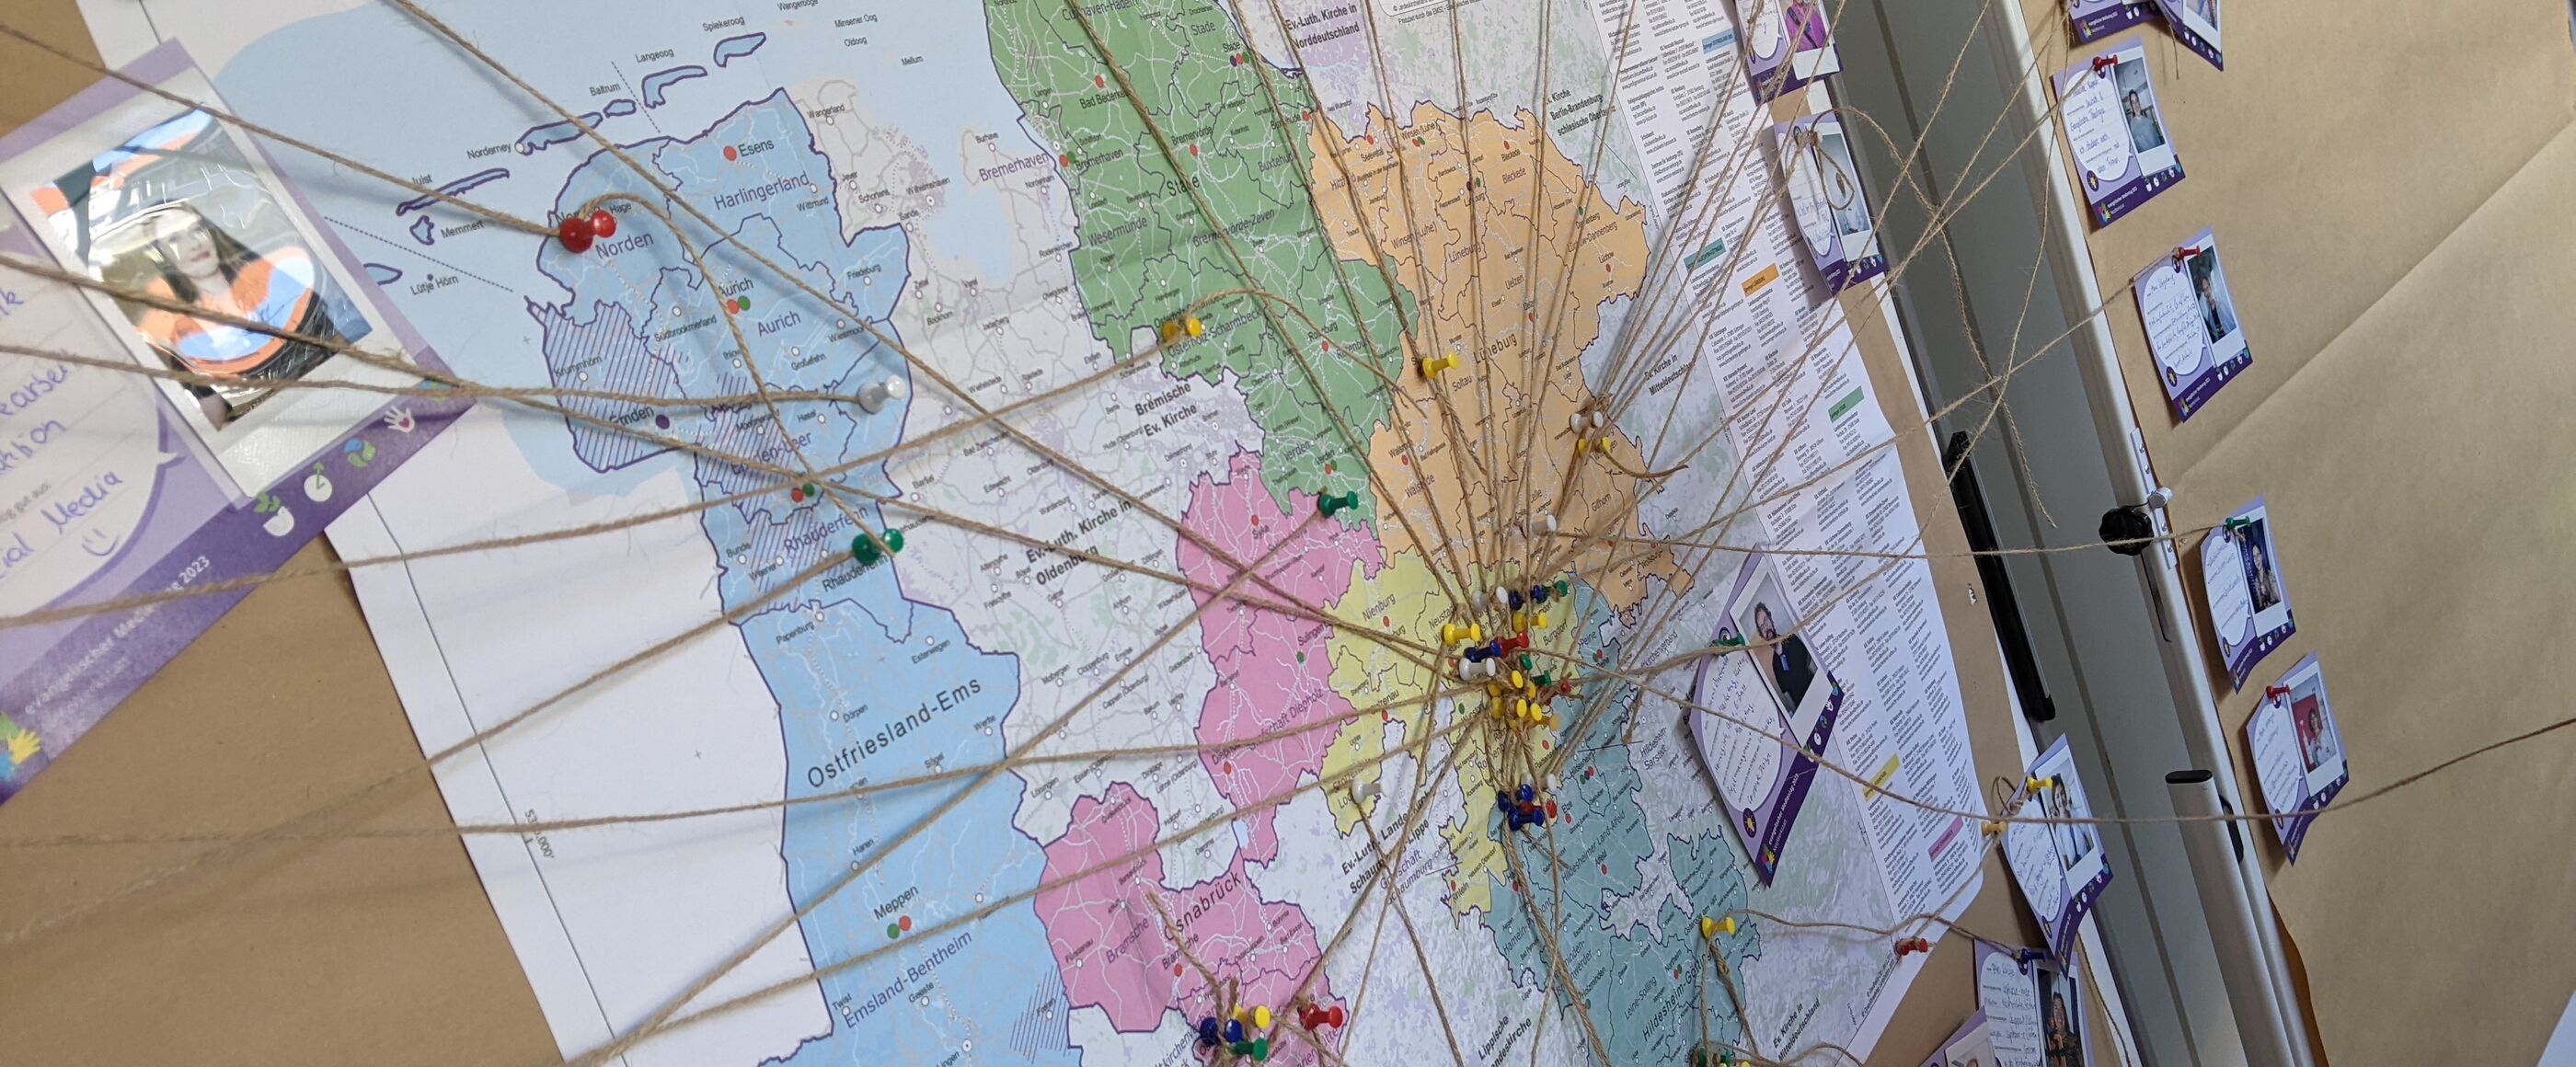 An einer braunen Pinnwand hängt eine bunte Karten von Niedersachsen. Bindfäden verbinden einige Orte mit lila Karten, auf denen Namen und Fotos sind. 